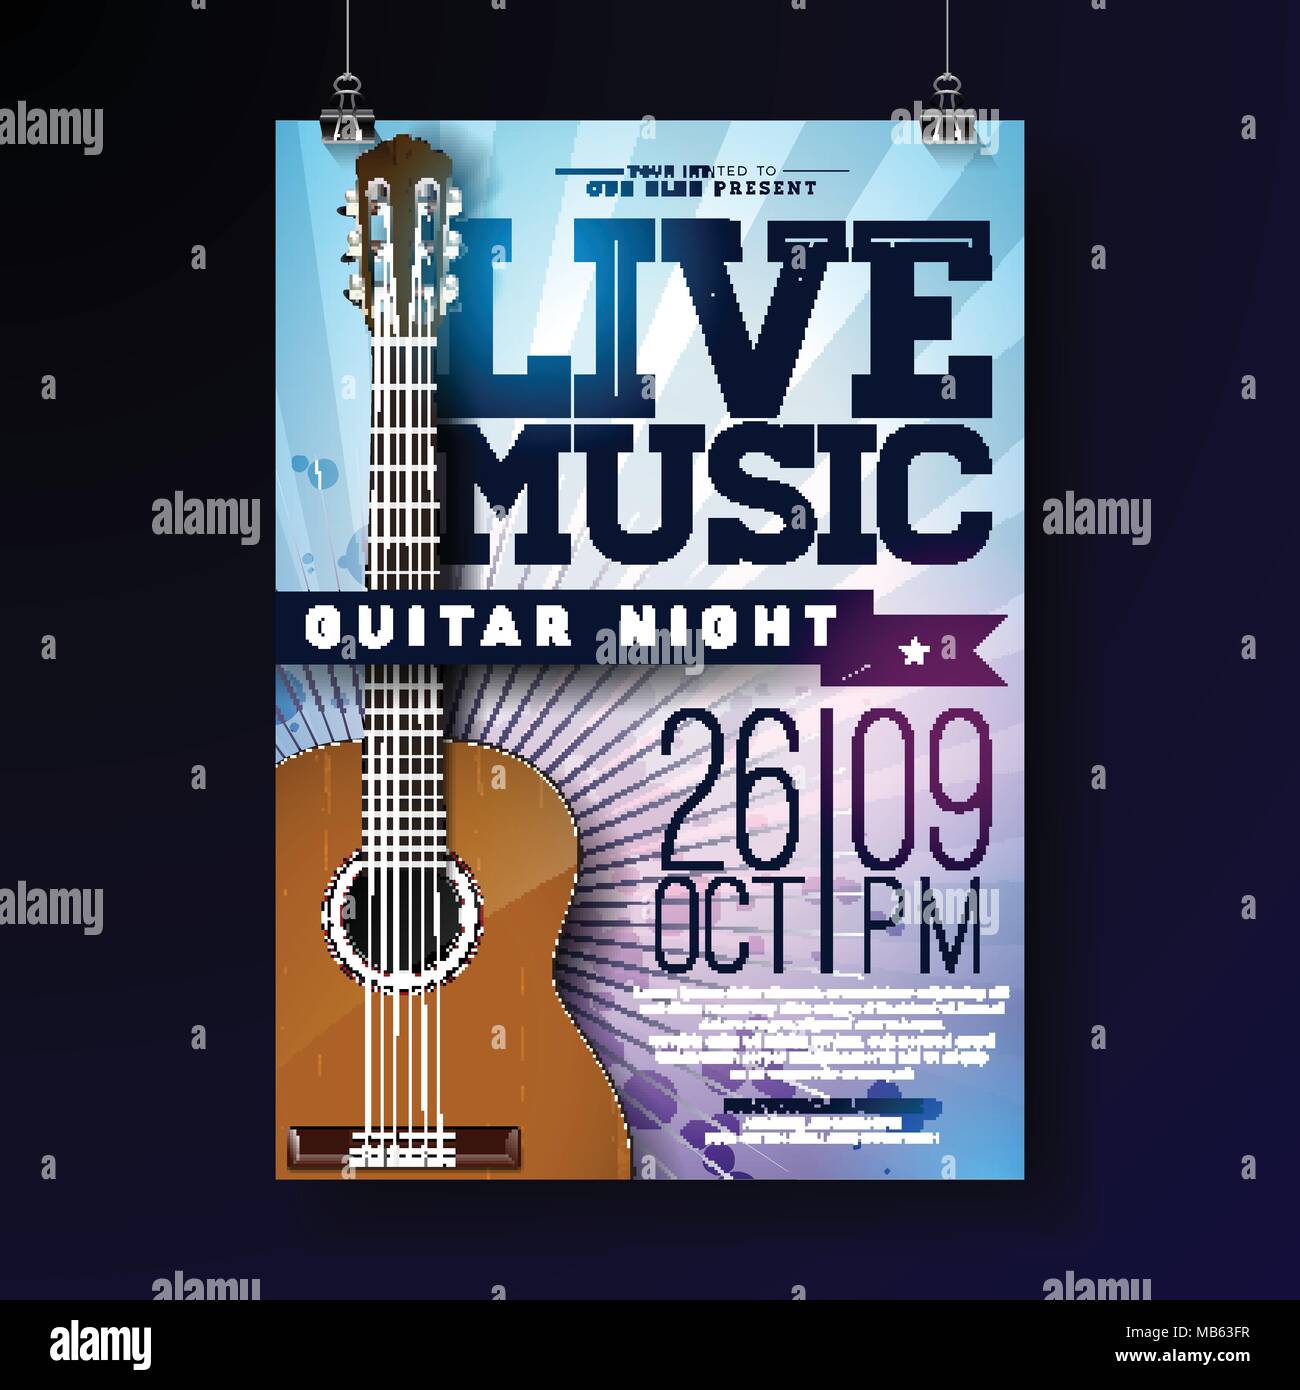 Musique live flyer design avec guitare acoustique sur grunge background. Vector illustration modèle pour l'affiche, invitation, brochure, bannière promotionnelle ou d'une carte de vœux. Illustration de Vecteur